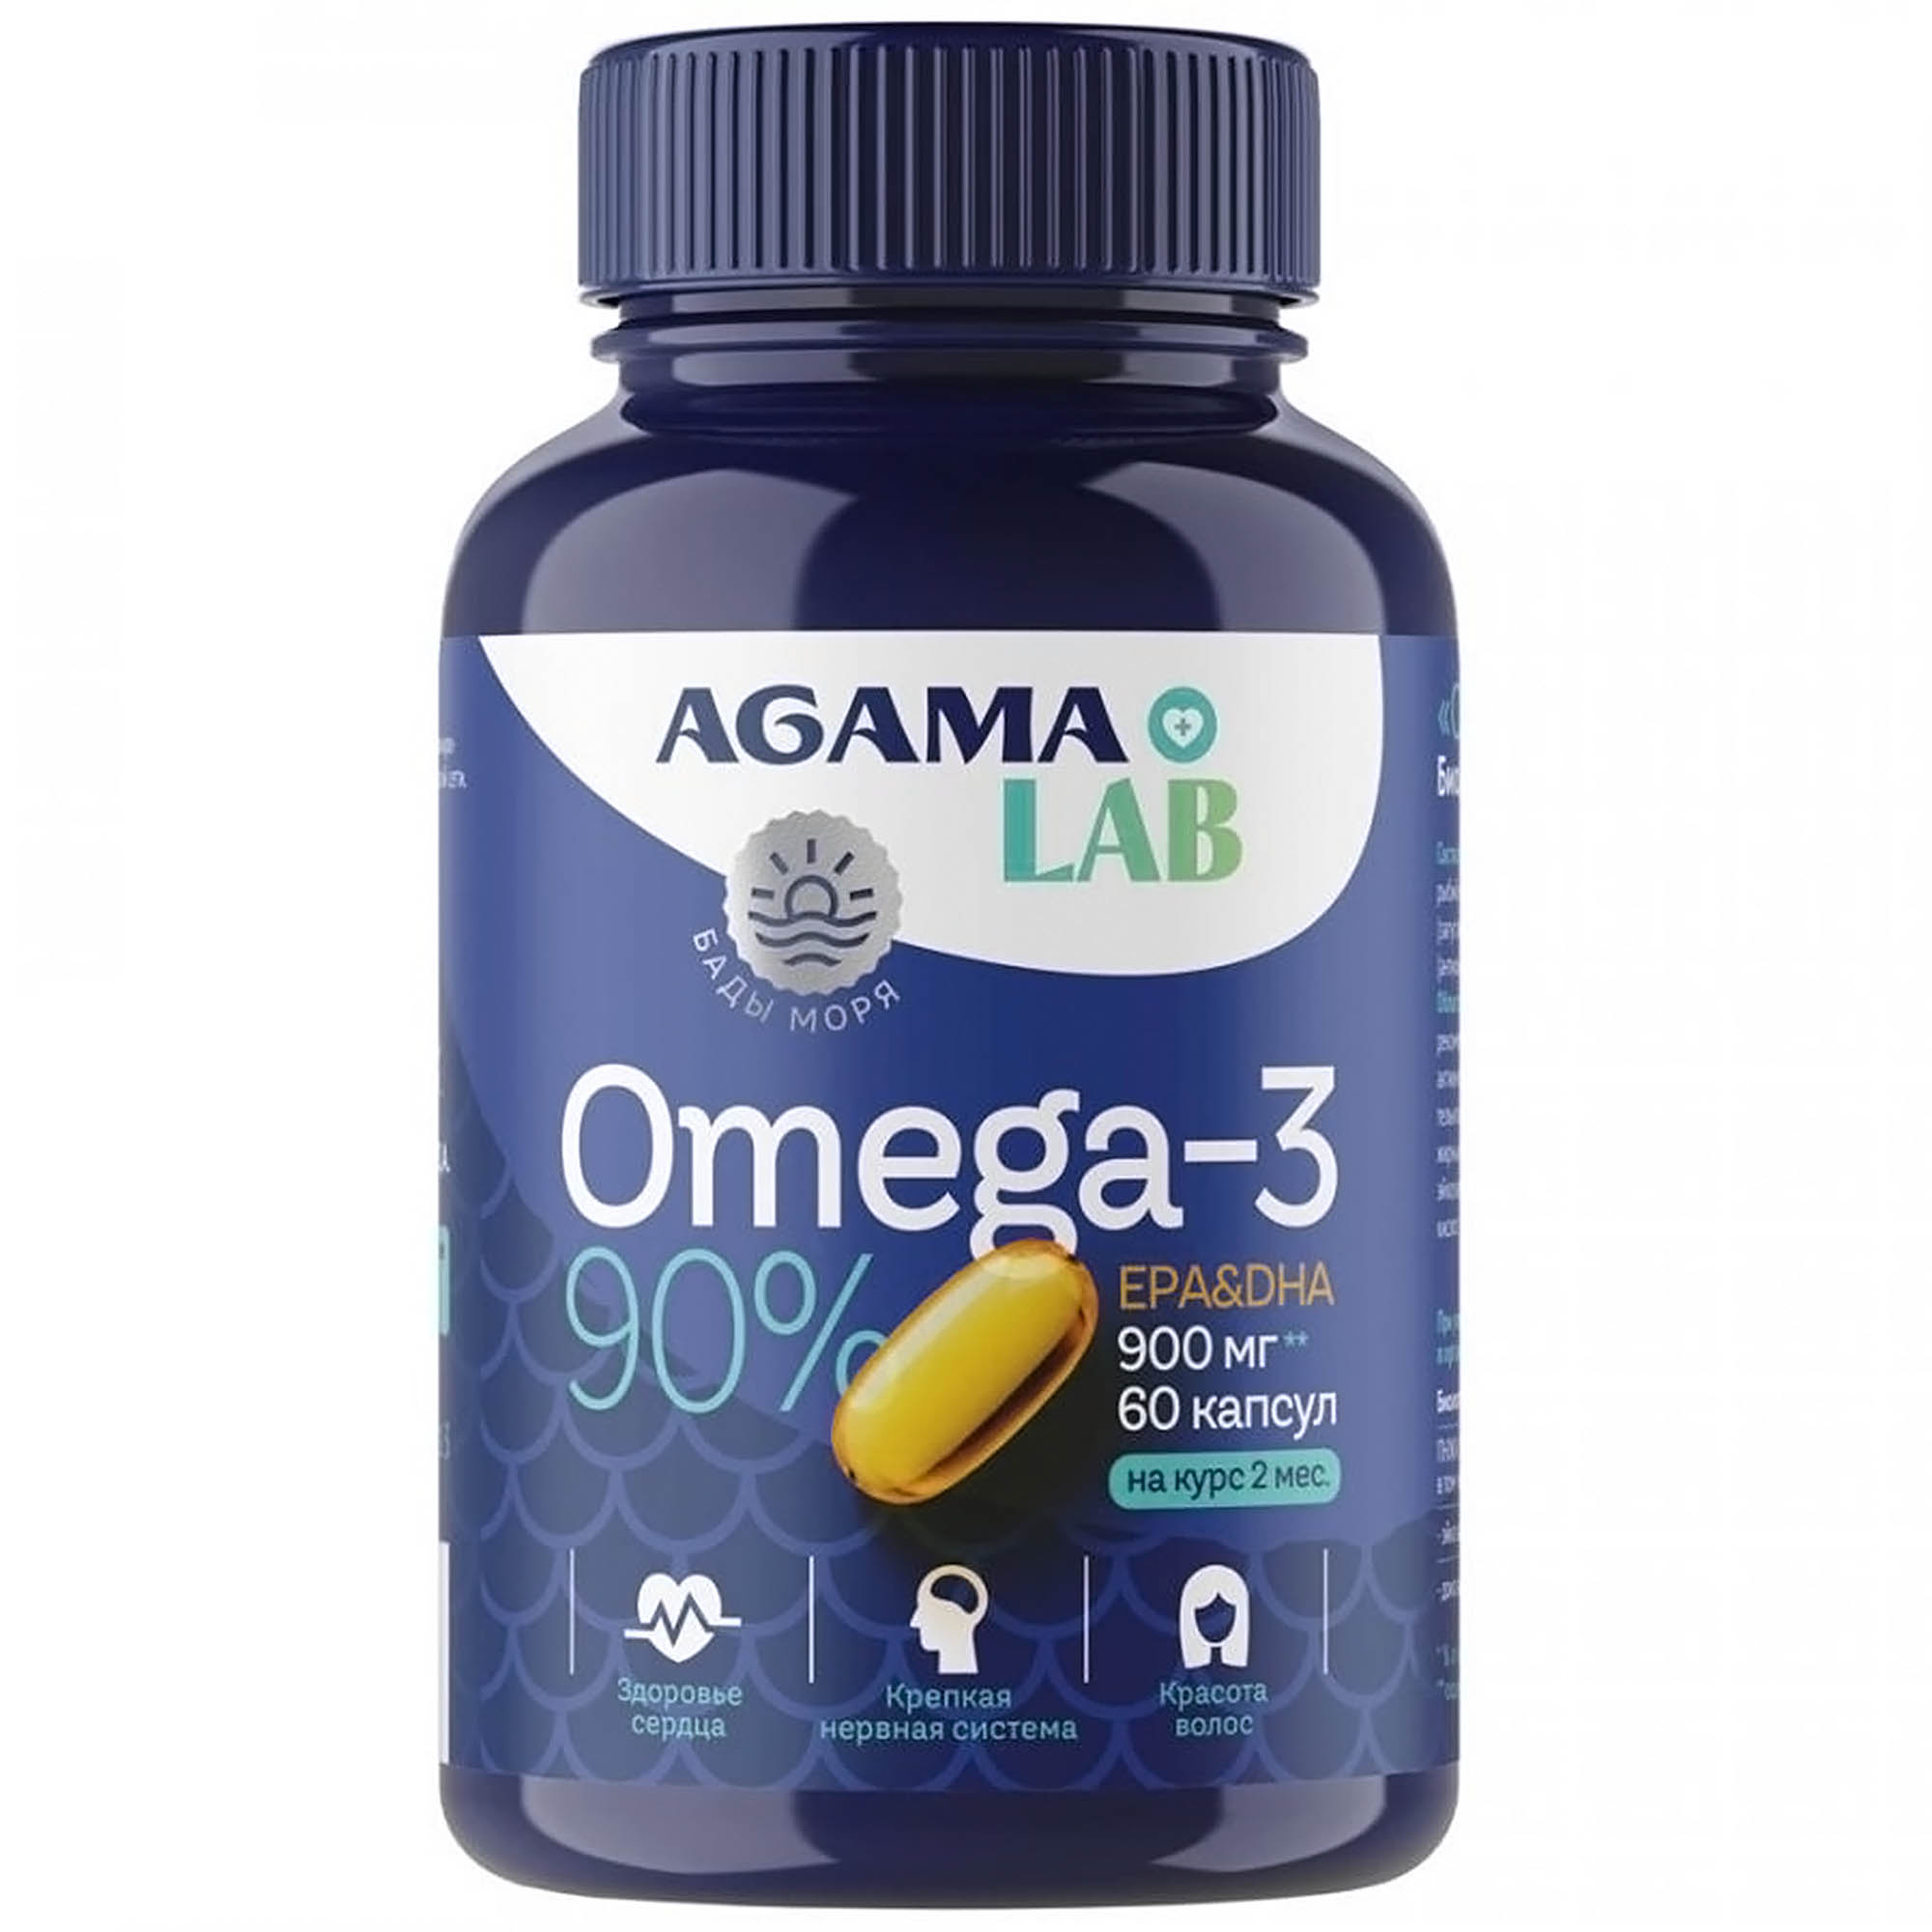 Витамины Agama Lab Omega 3 90% 1300 мг, 60 шт витамины agama lab omega 3 90% 1300 мг 60 шт